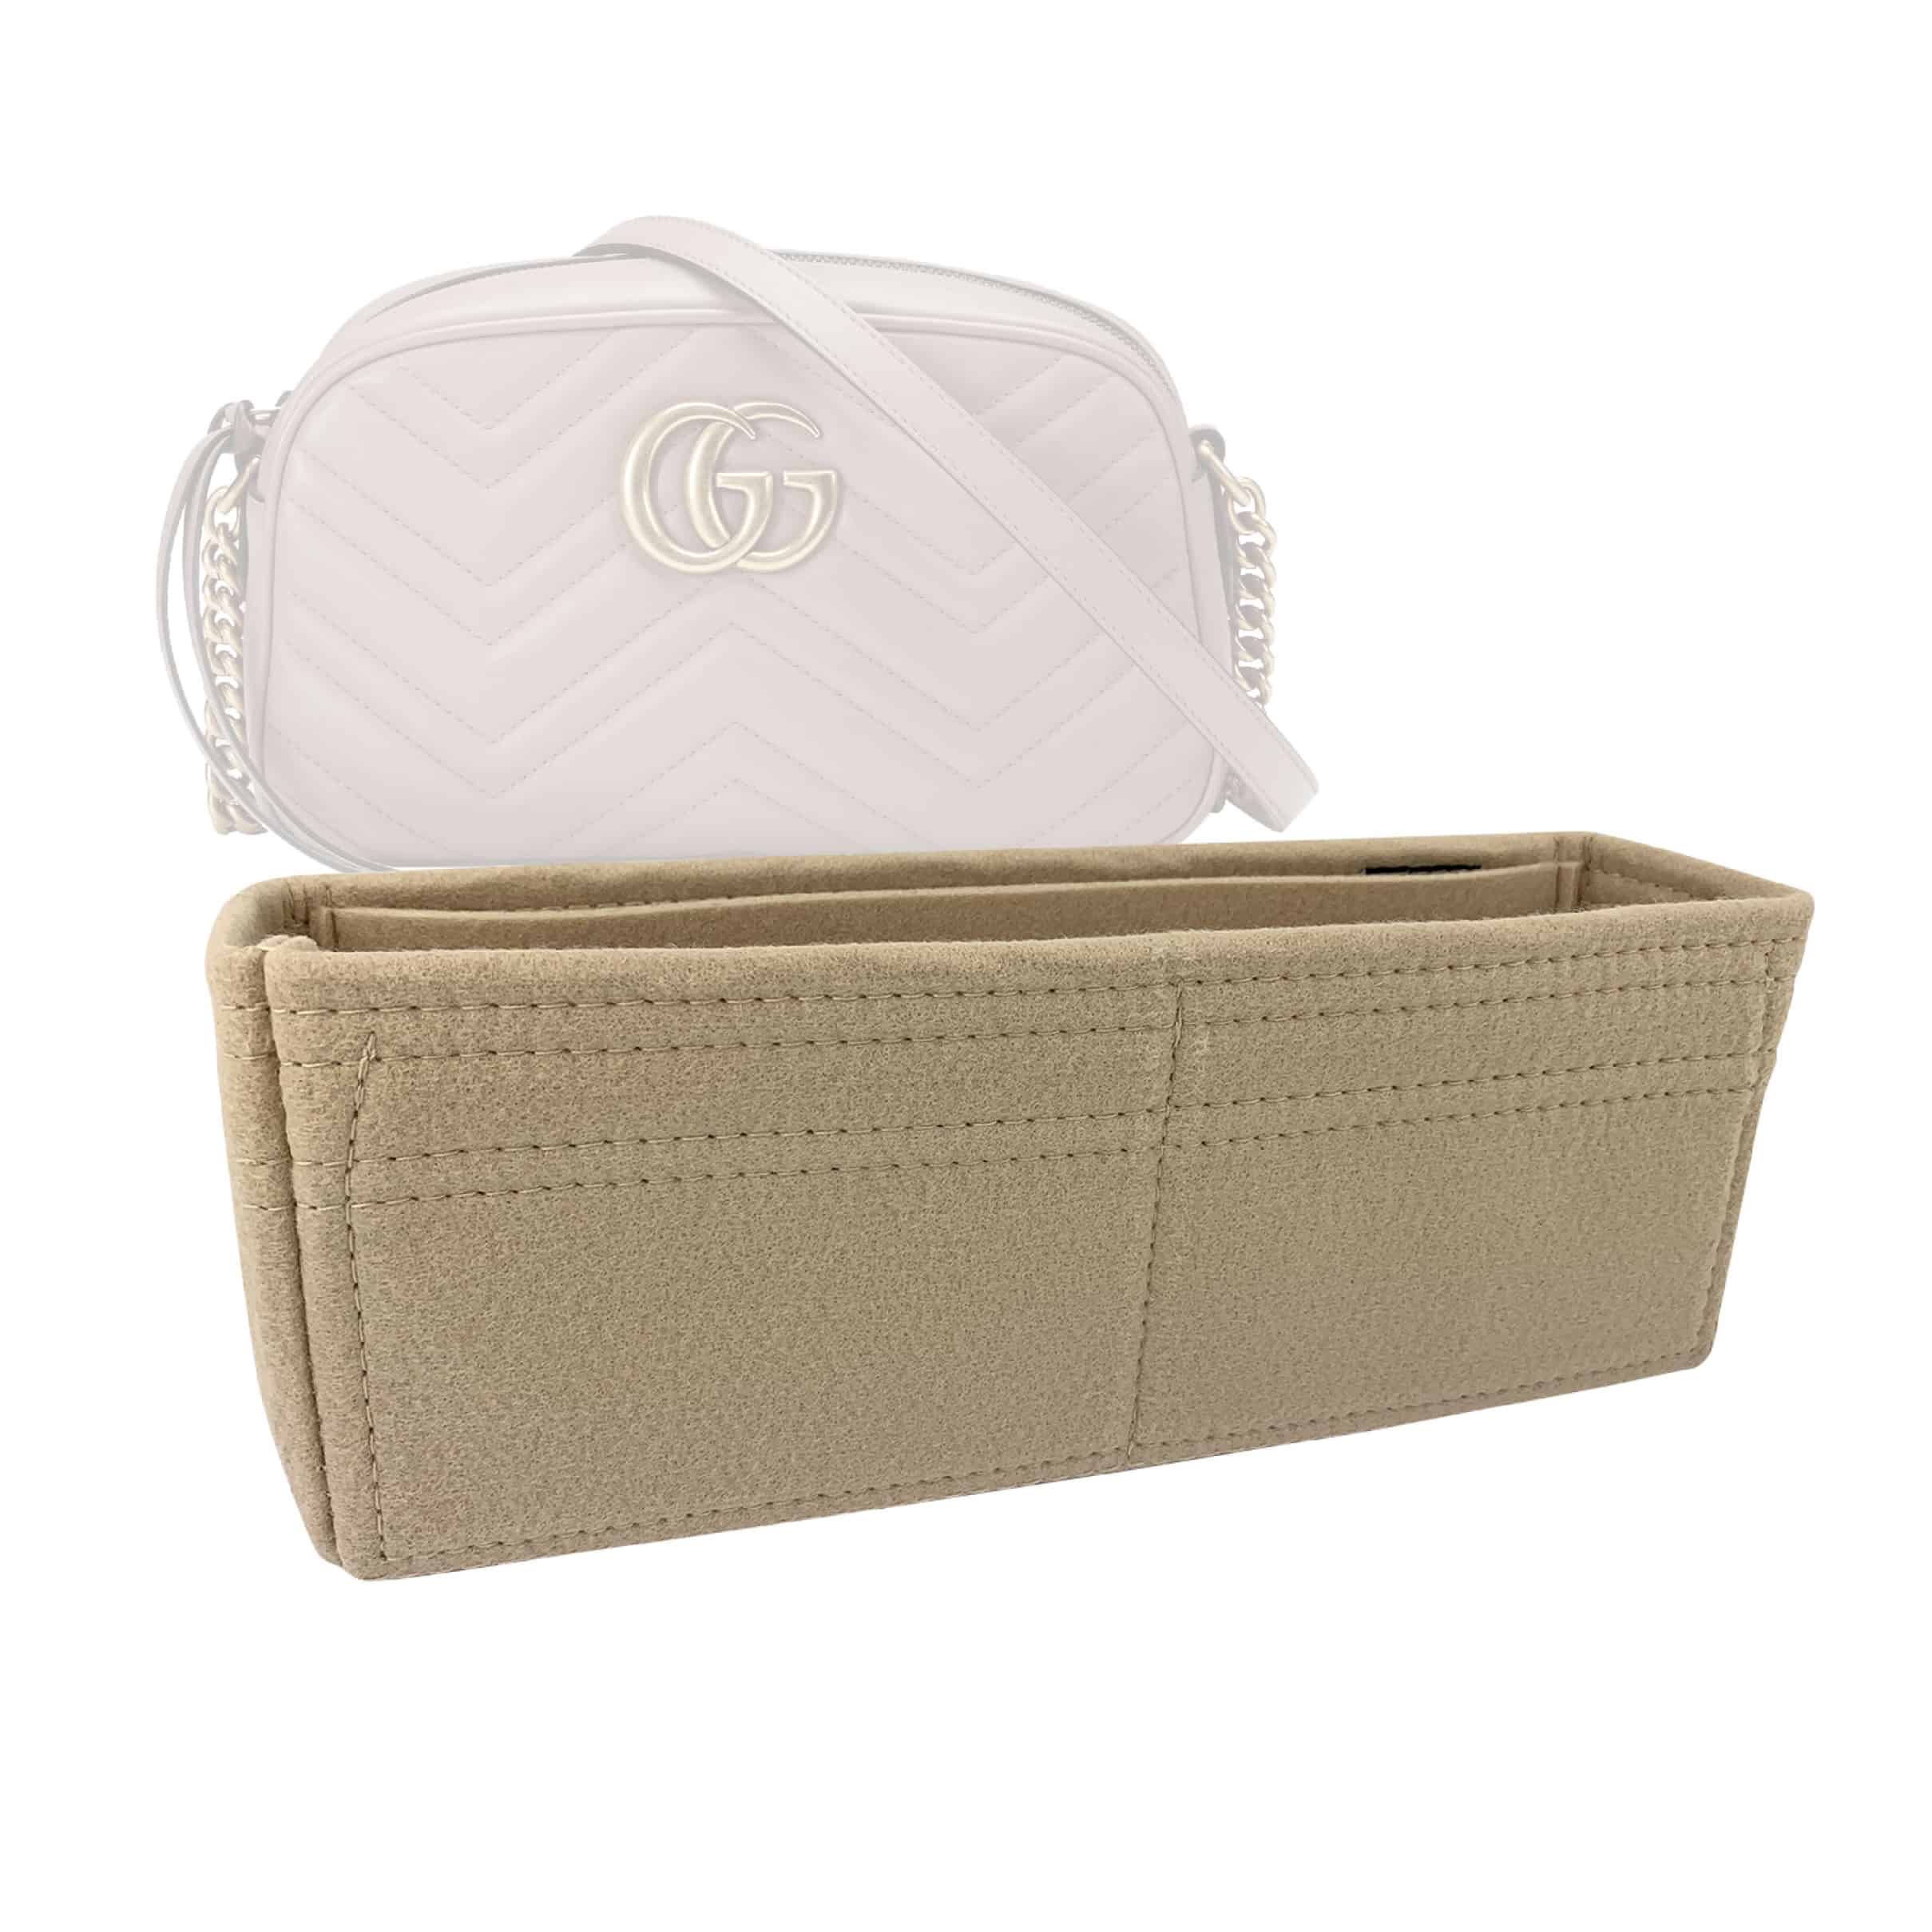 Small Handbag Shaper Insert for GG Marmont Matelasse Shoulder Bag(Pack of  2)Felt Insert Purse Organi…See more Small Handbag Shaper Insert for GG